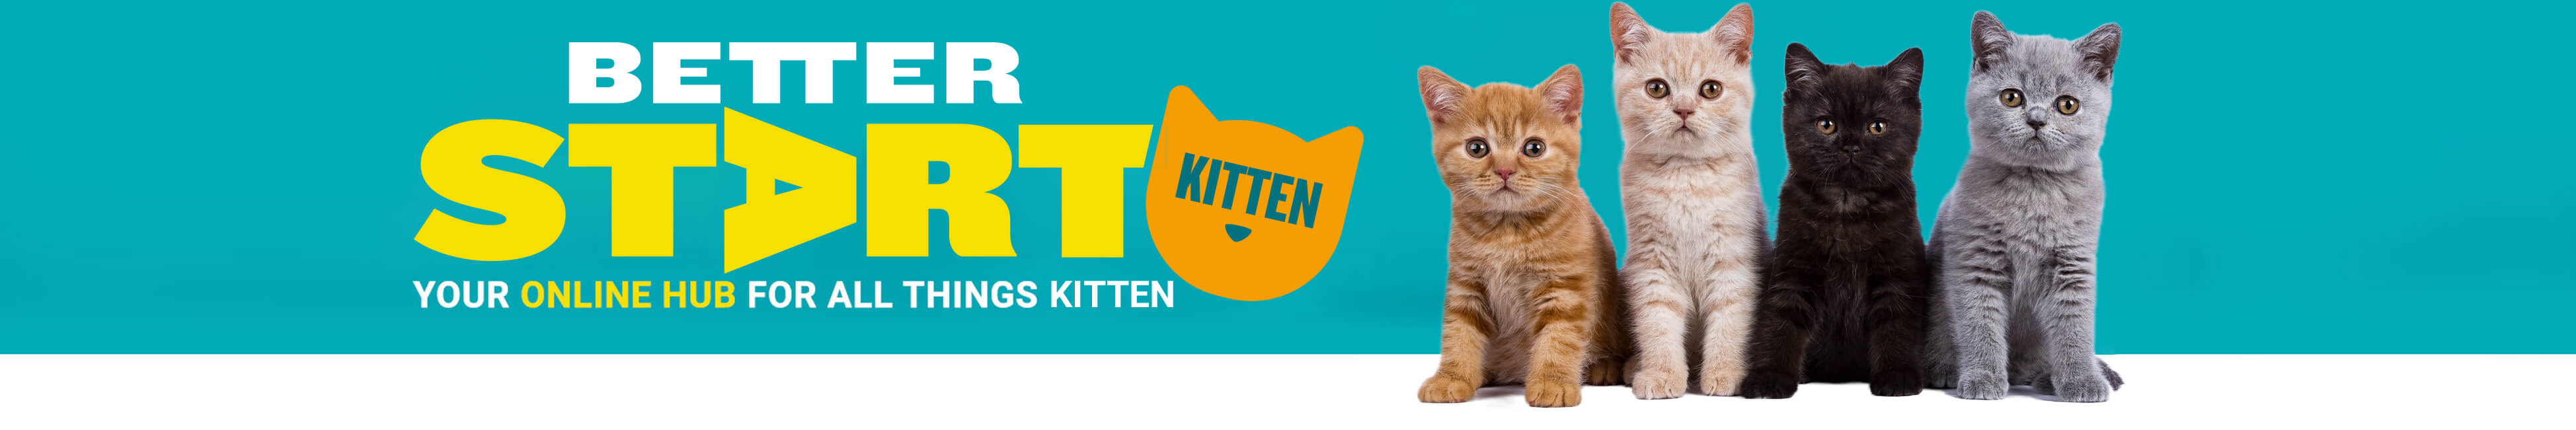 Better Start Kitten - Your online hub for all things kitten